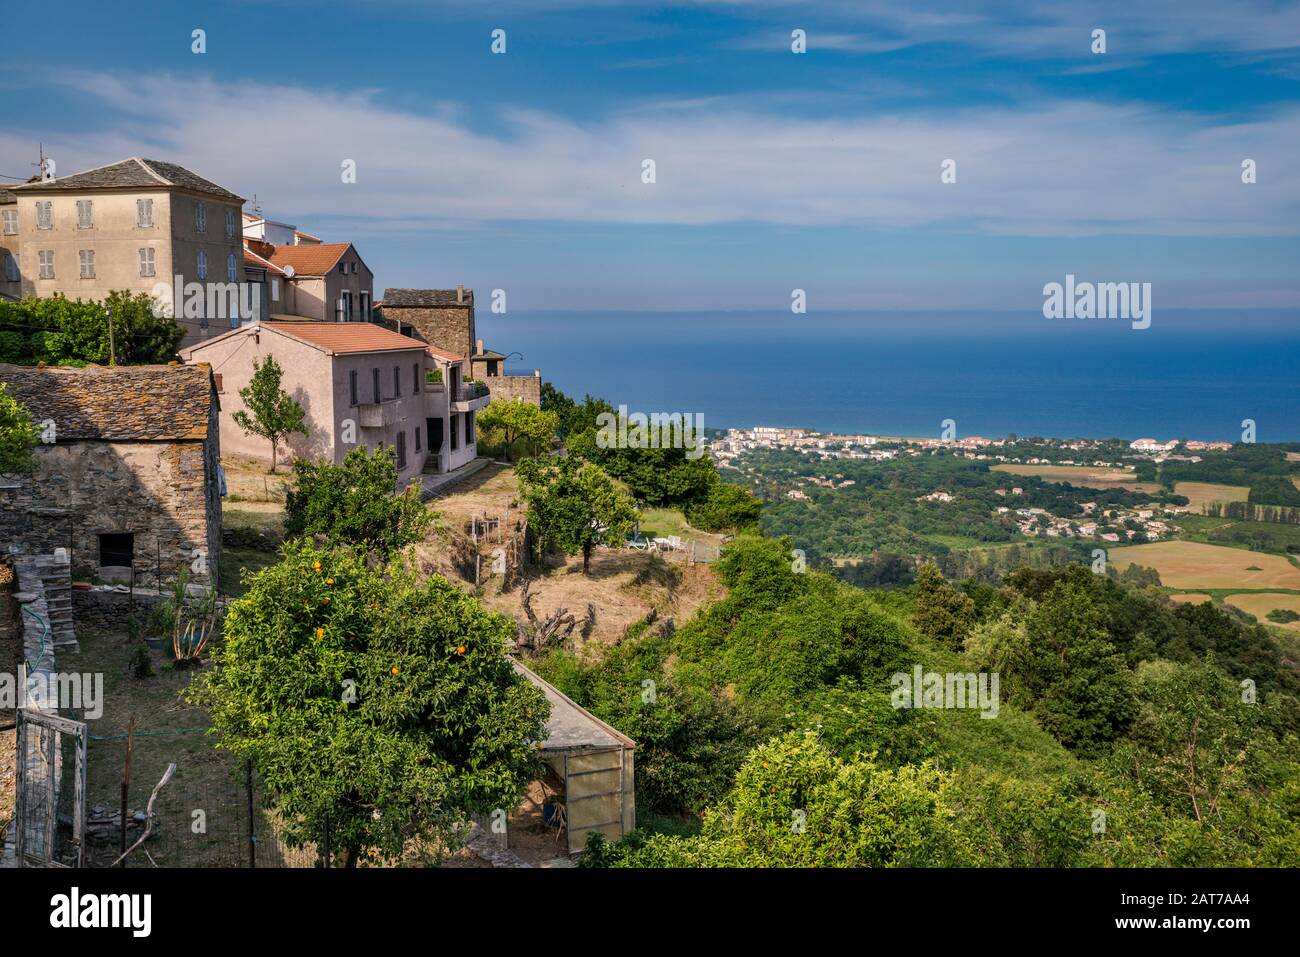 Hill town of San Nicolao, Costa Verde sea coast, Tyrrhenian Sea in distance, Castagniccia region, Haute-Corse department, Corsica, France Stock Photo